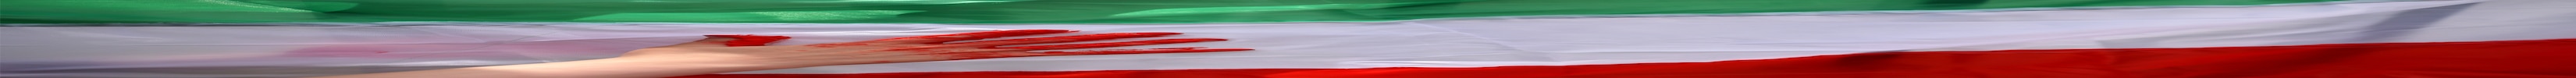 一只涂满红色油漆的手，看起来像血，在前面伊朗国旗的